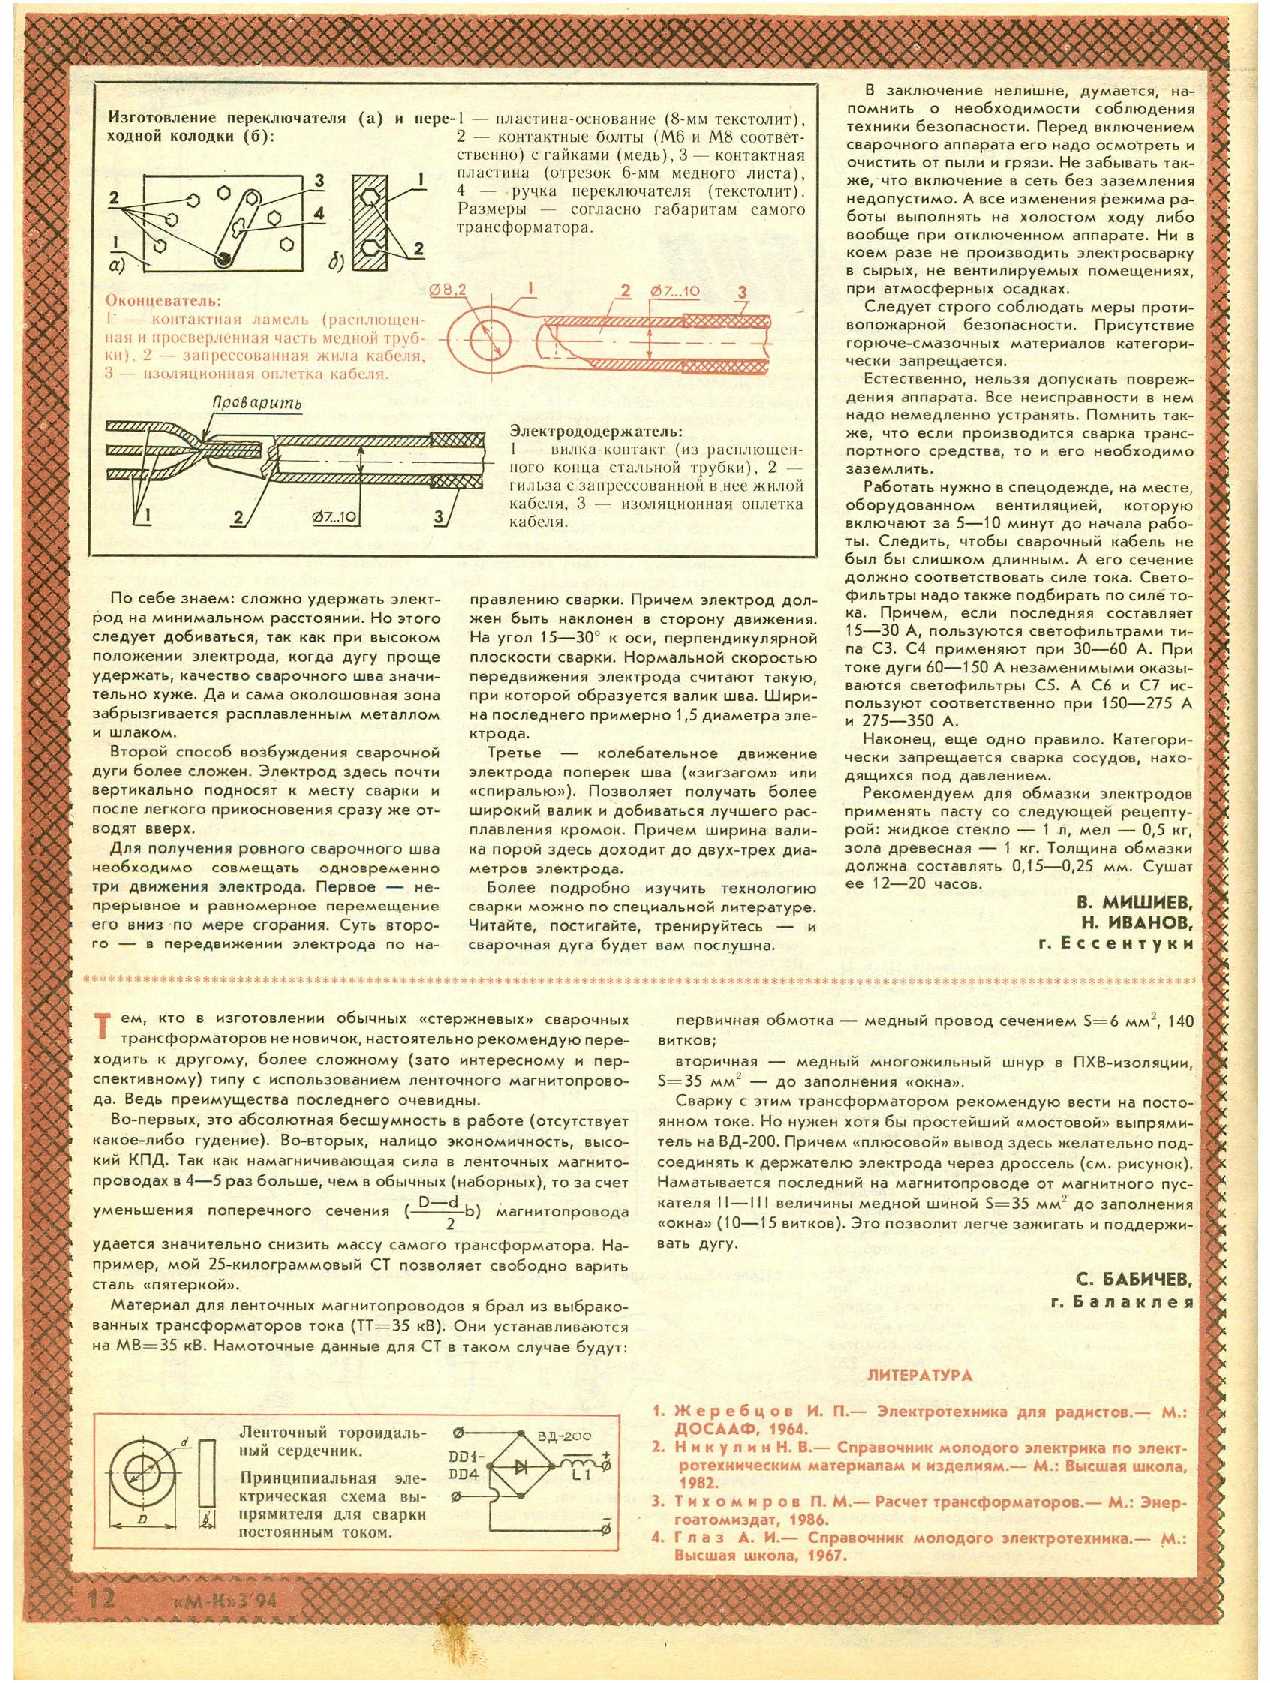 МК 3, 1994, 12 c.